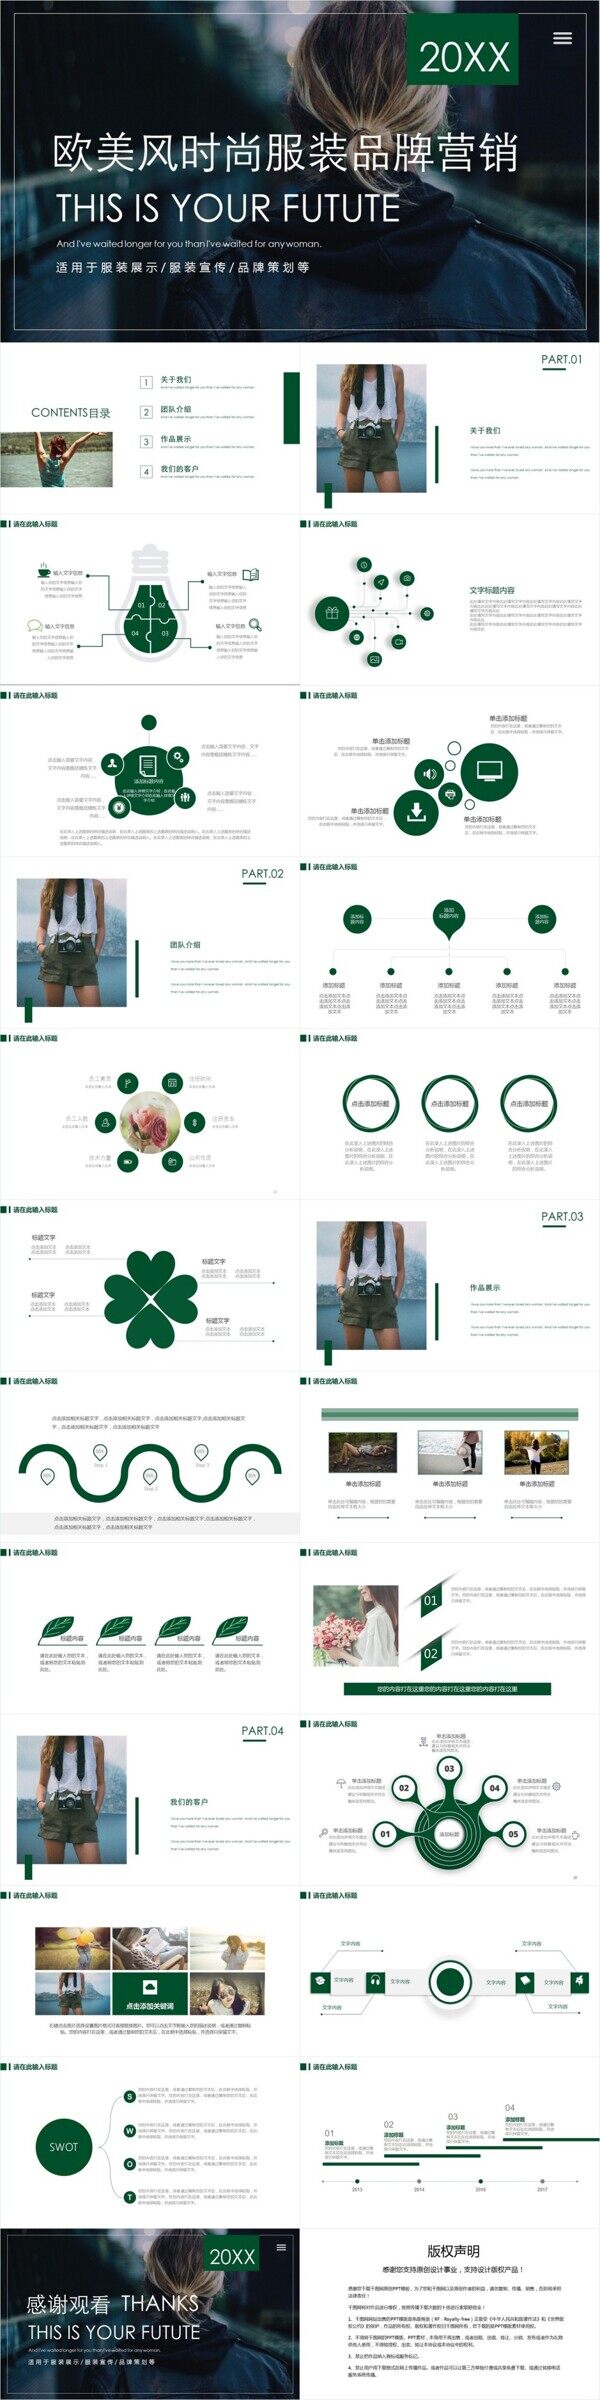 欧美风时尚服装品牌营销策划PPT模板